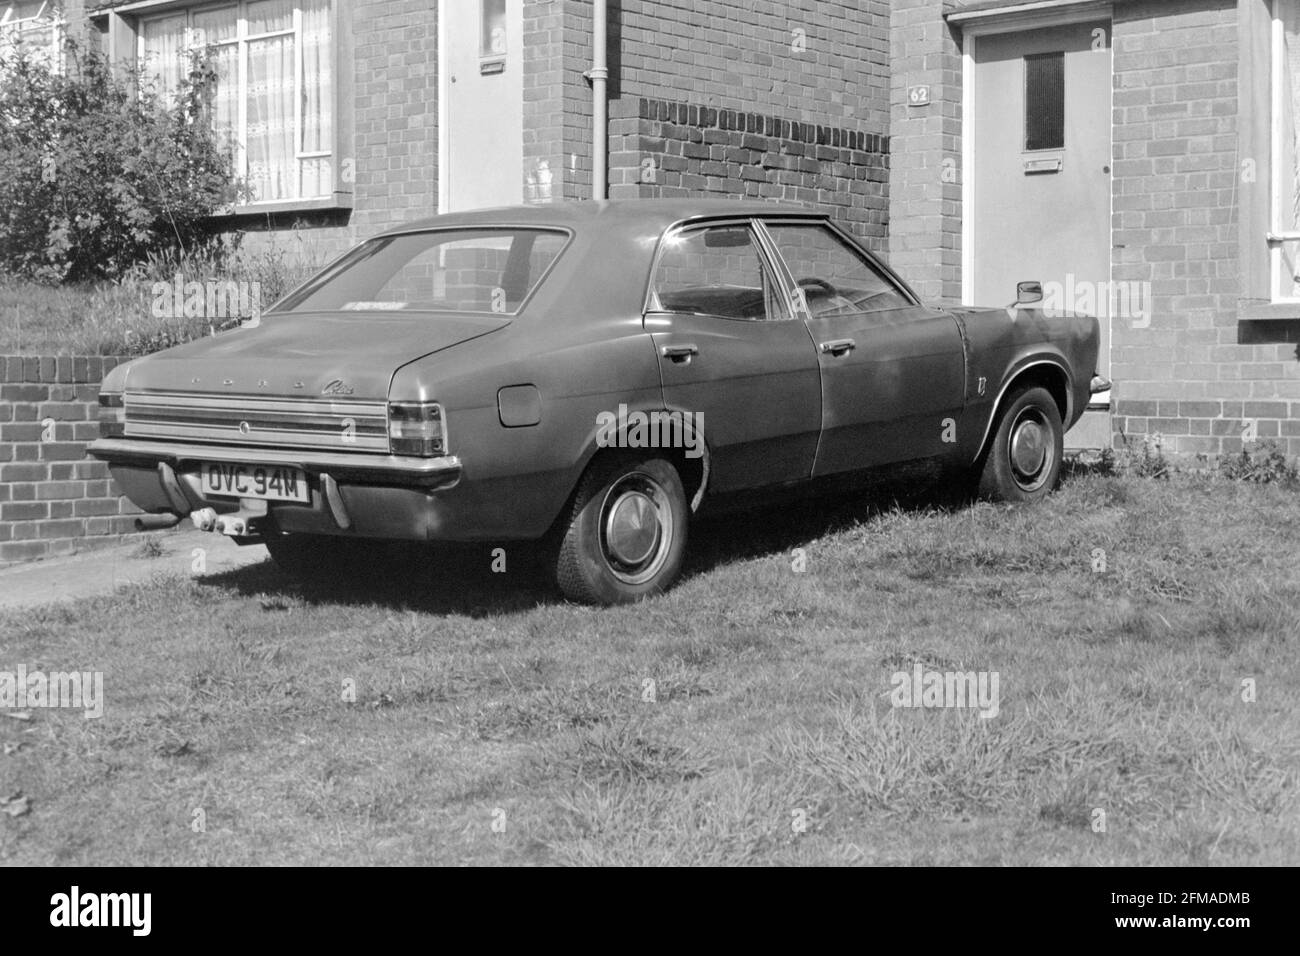 vecchia ford cortina mk3 dilapidata parcheggiata sul prato anteriore della casa 1980 inghilterra uk Foto Stock